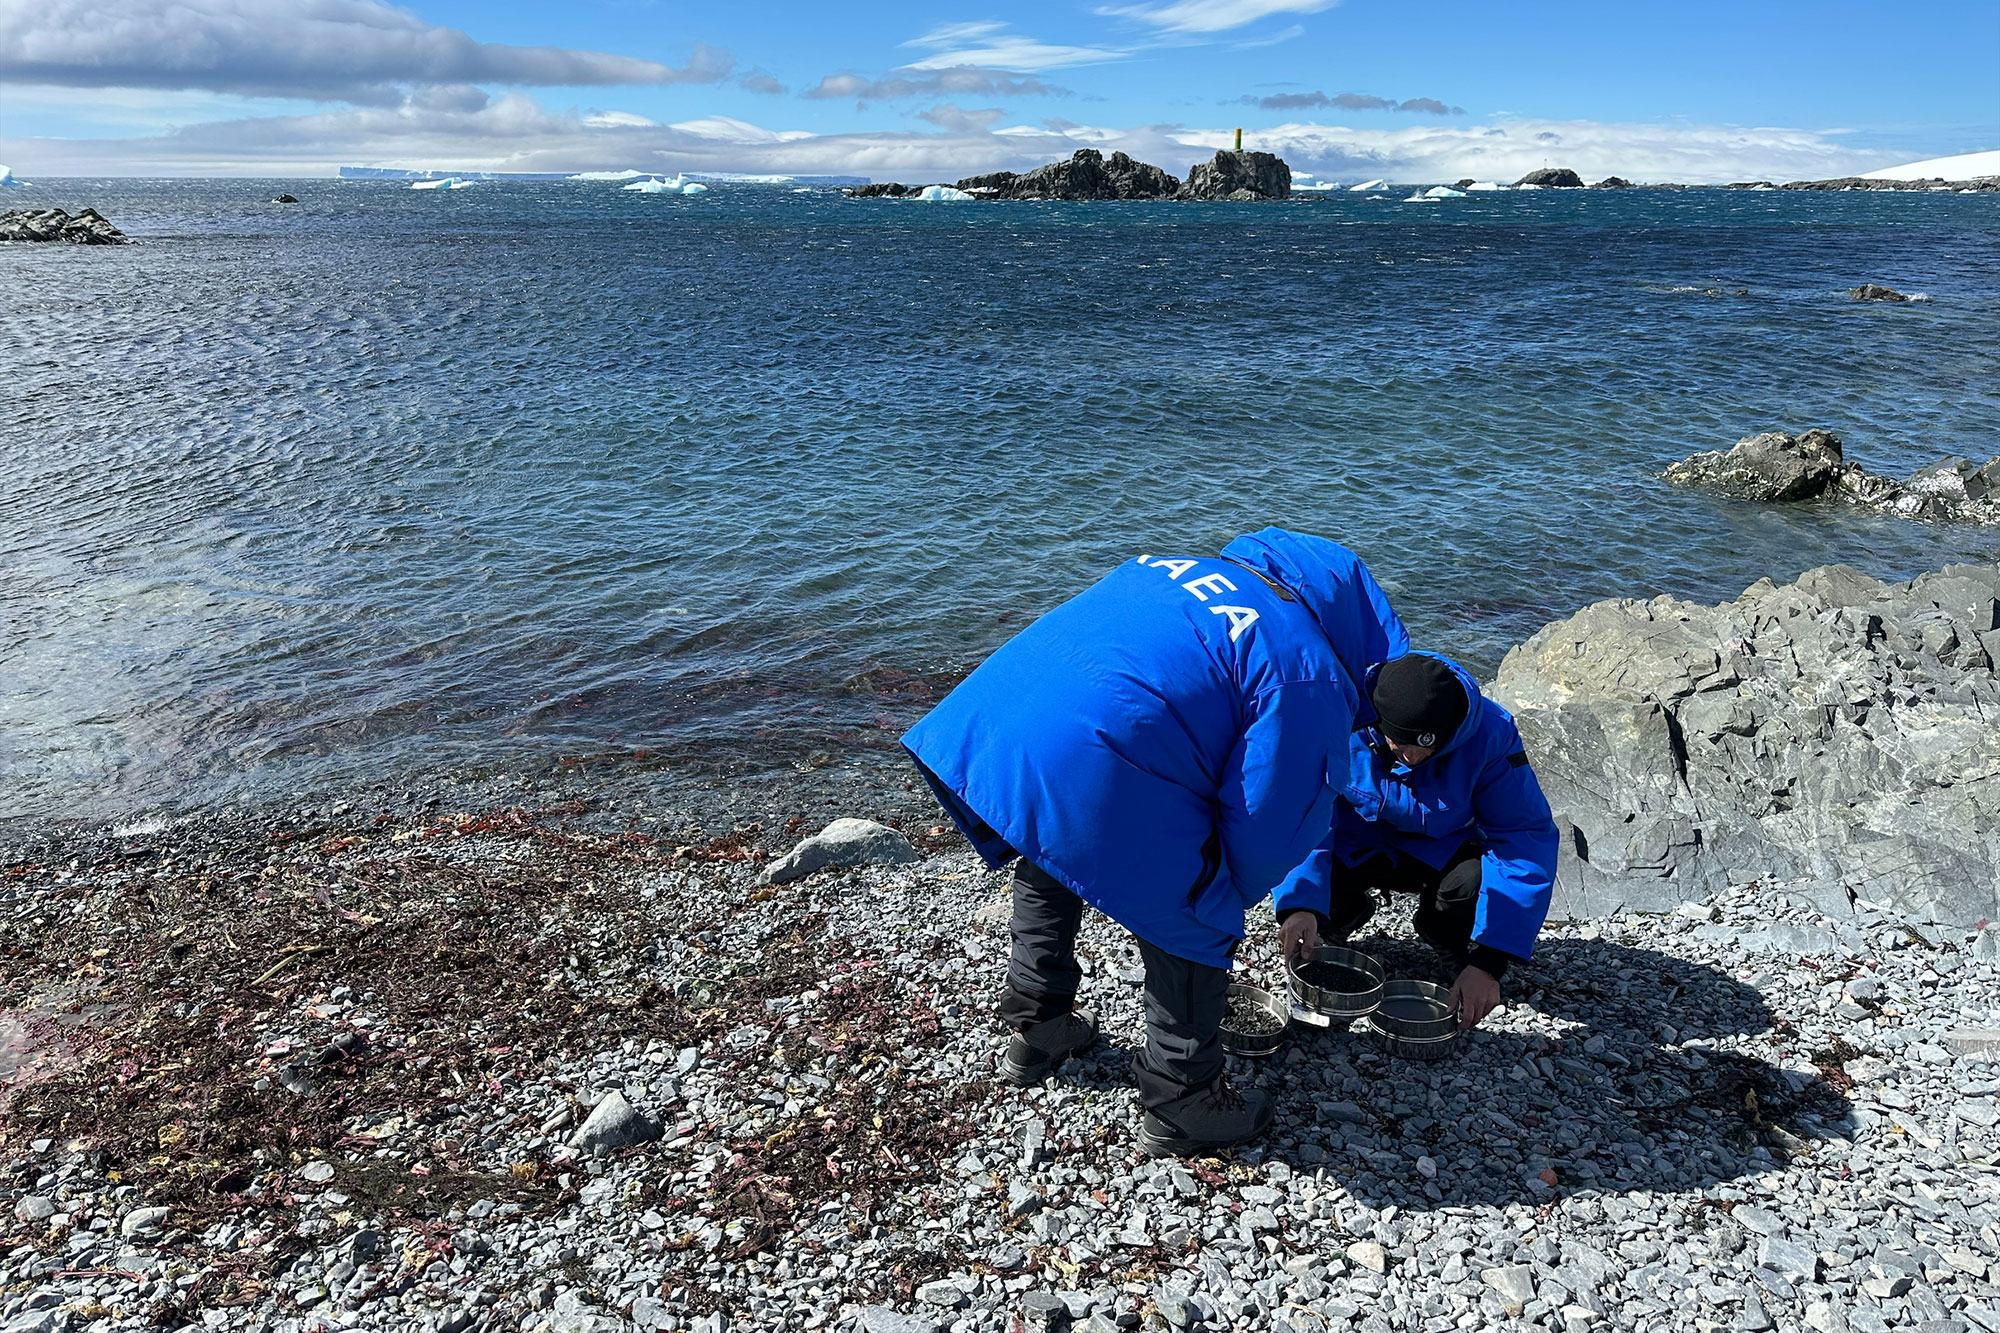 Au cours du mois prochain, deux experts de l’AIEA surveilleront la présence de microplastiques dans l’environnement sur 22 sites proches de la base de recherche Carlini, en analysant différents milieux de l'Antarctique.